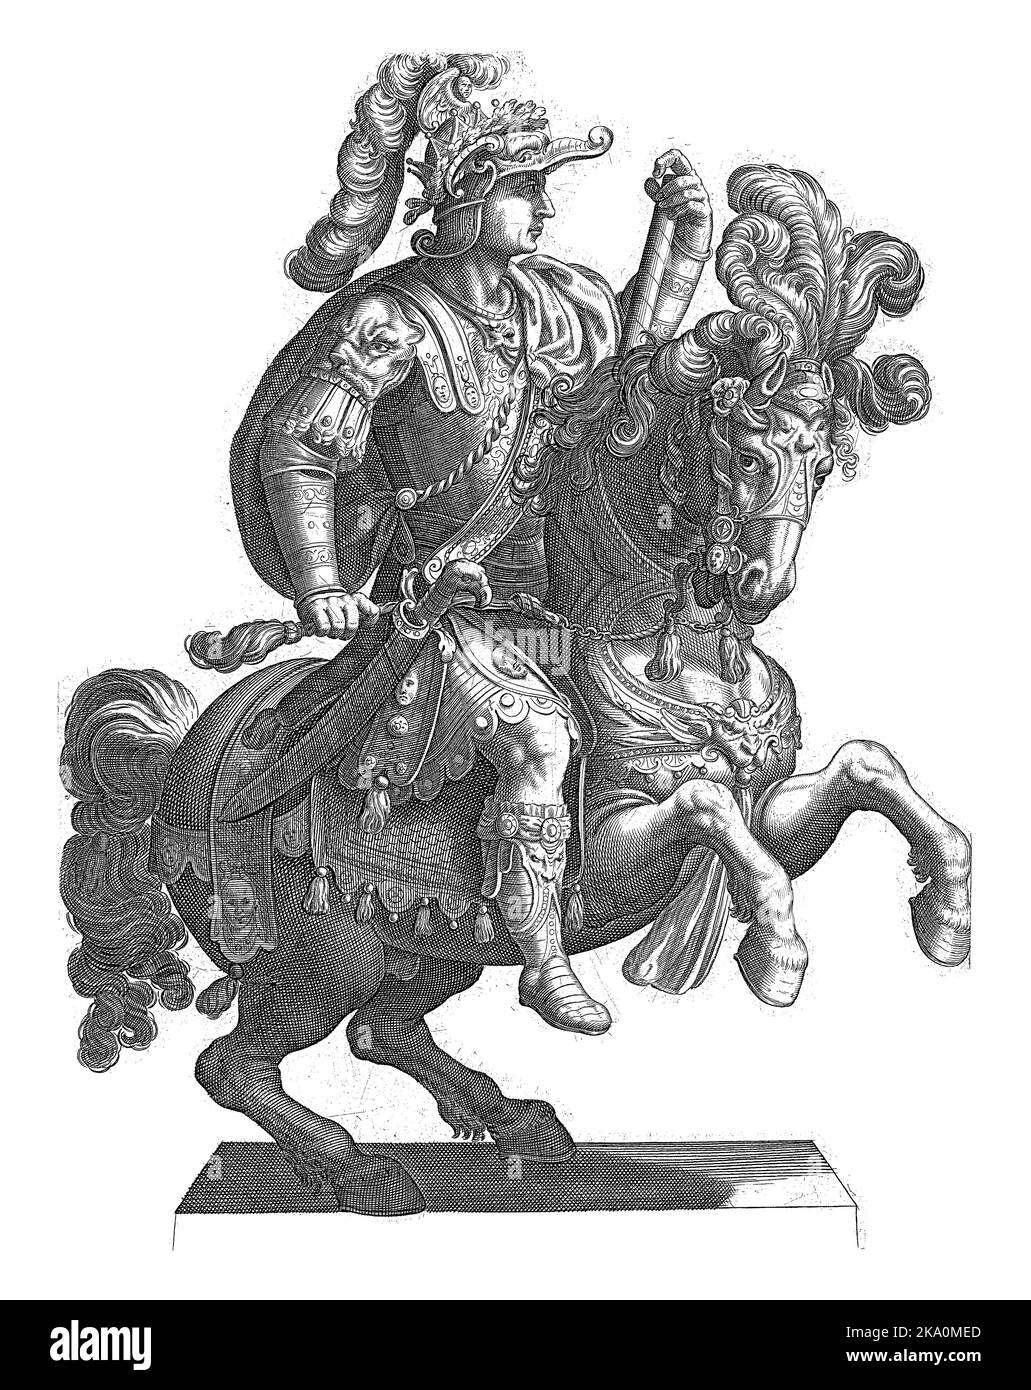 Ein römischer Kaiser auf dem Pferderücken, im Profil dargestellt mit einer Hand am Züg und in der anderen seinem Befehlsstab. Stockfoto